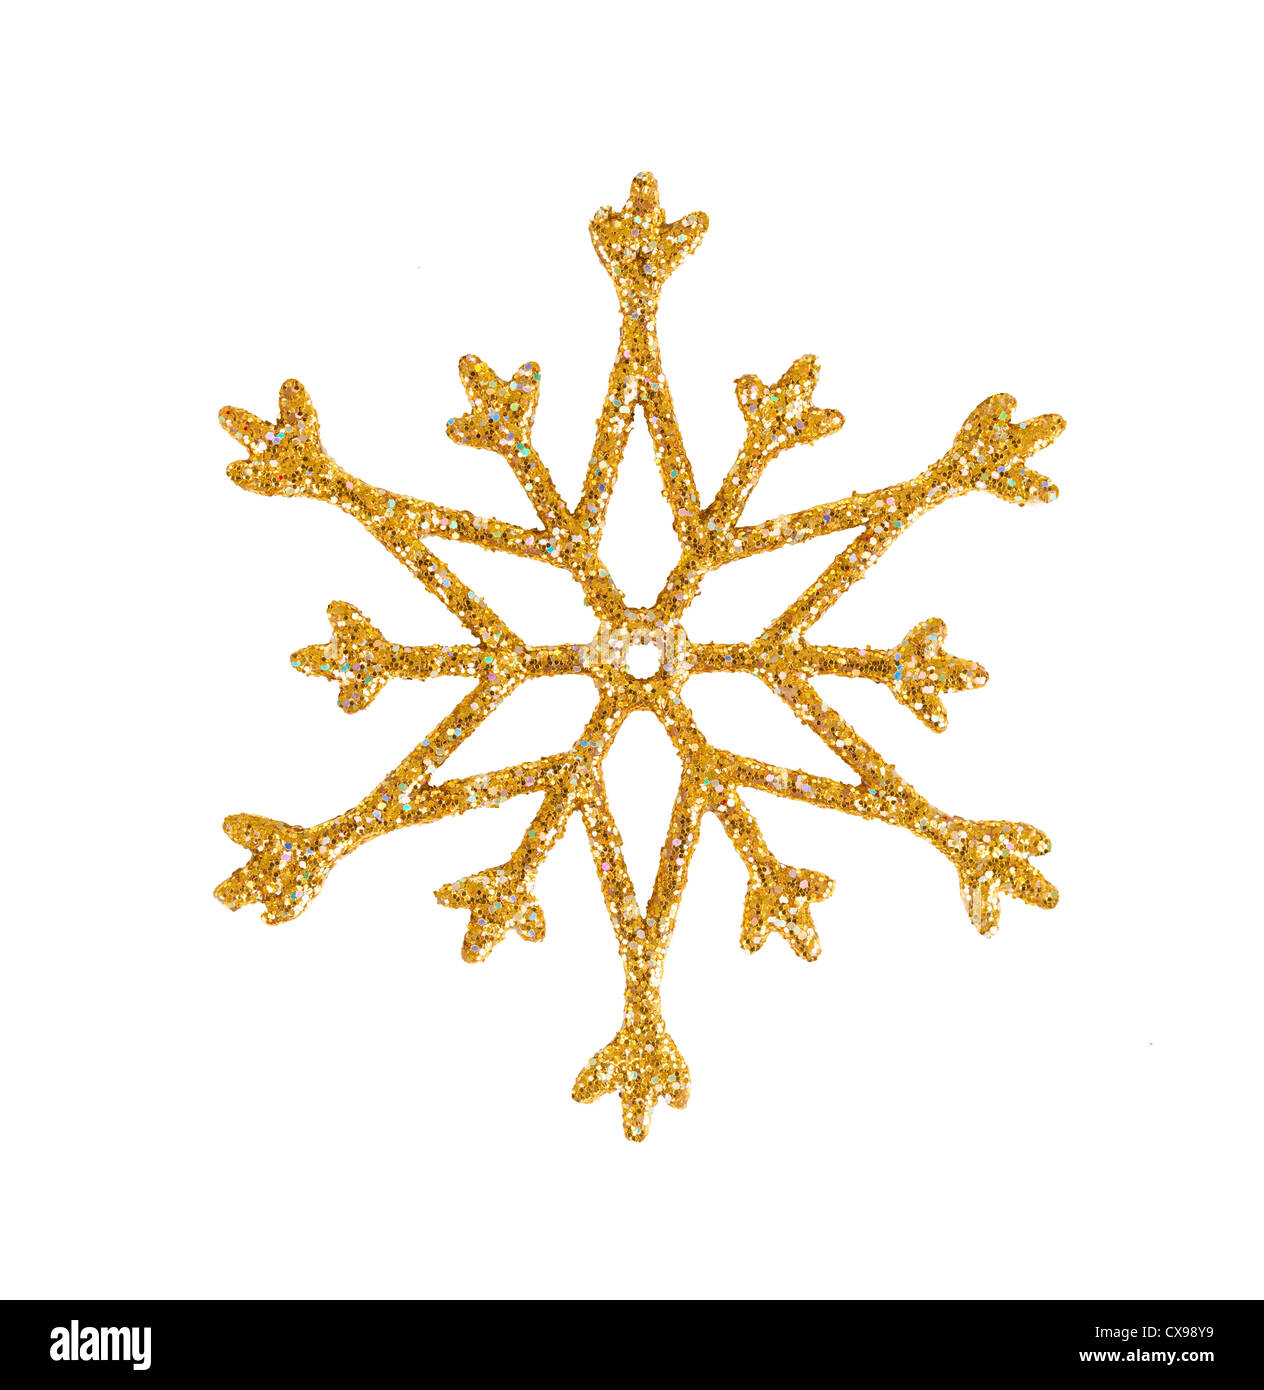 Goldene Schneeflocke isoliert auf weiss. Weihnachtsbaum Dekoration. Stockfoto